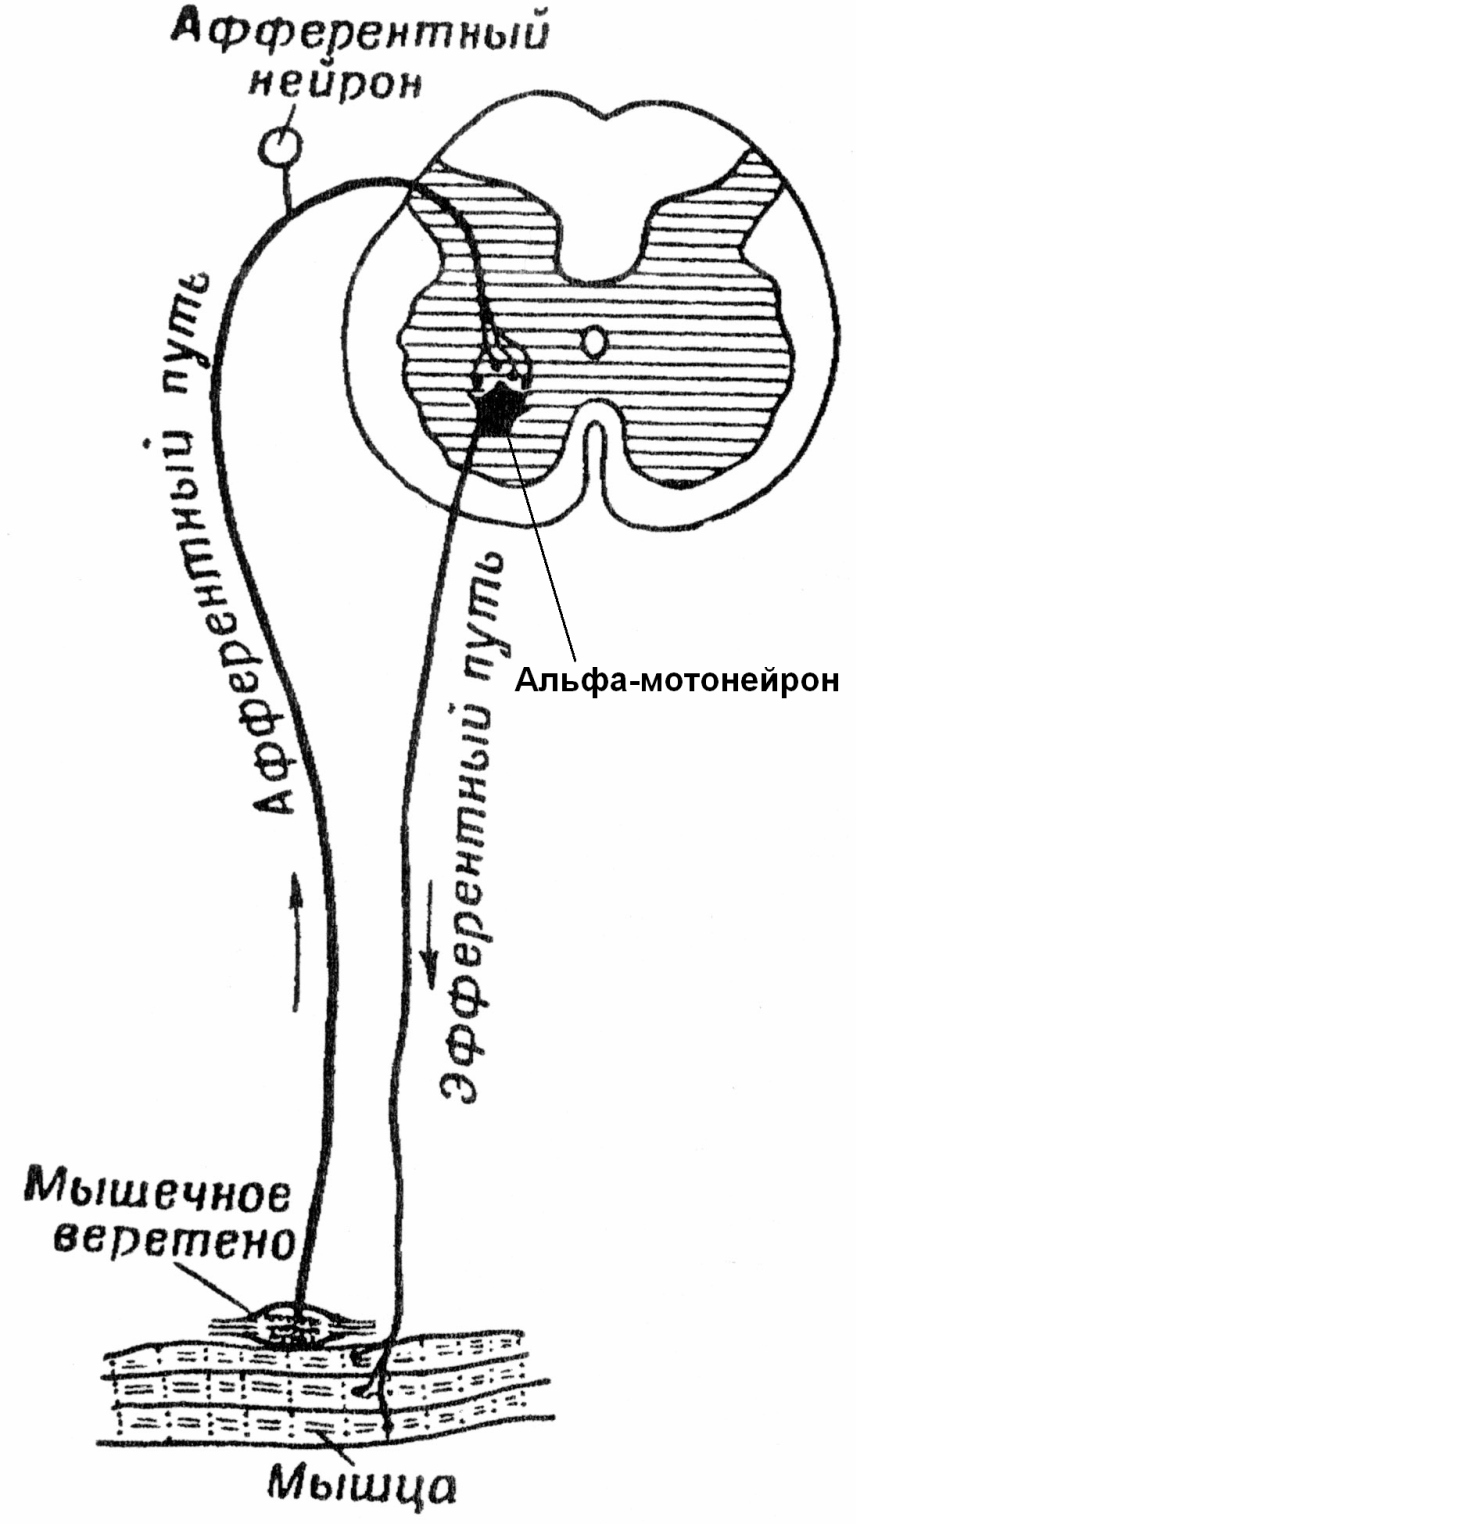 Рефлекторное состояние. Схема дуги миотатического рефлекса. Схема рефлекторных дуг спинного мозга. Рефлекторная дуга проприоцептивного рефлекса. Регуляция мышечного тонуса спинальная рефлекторная дуга.